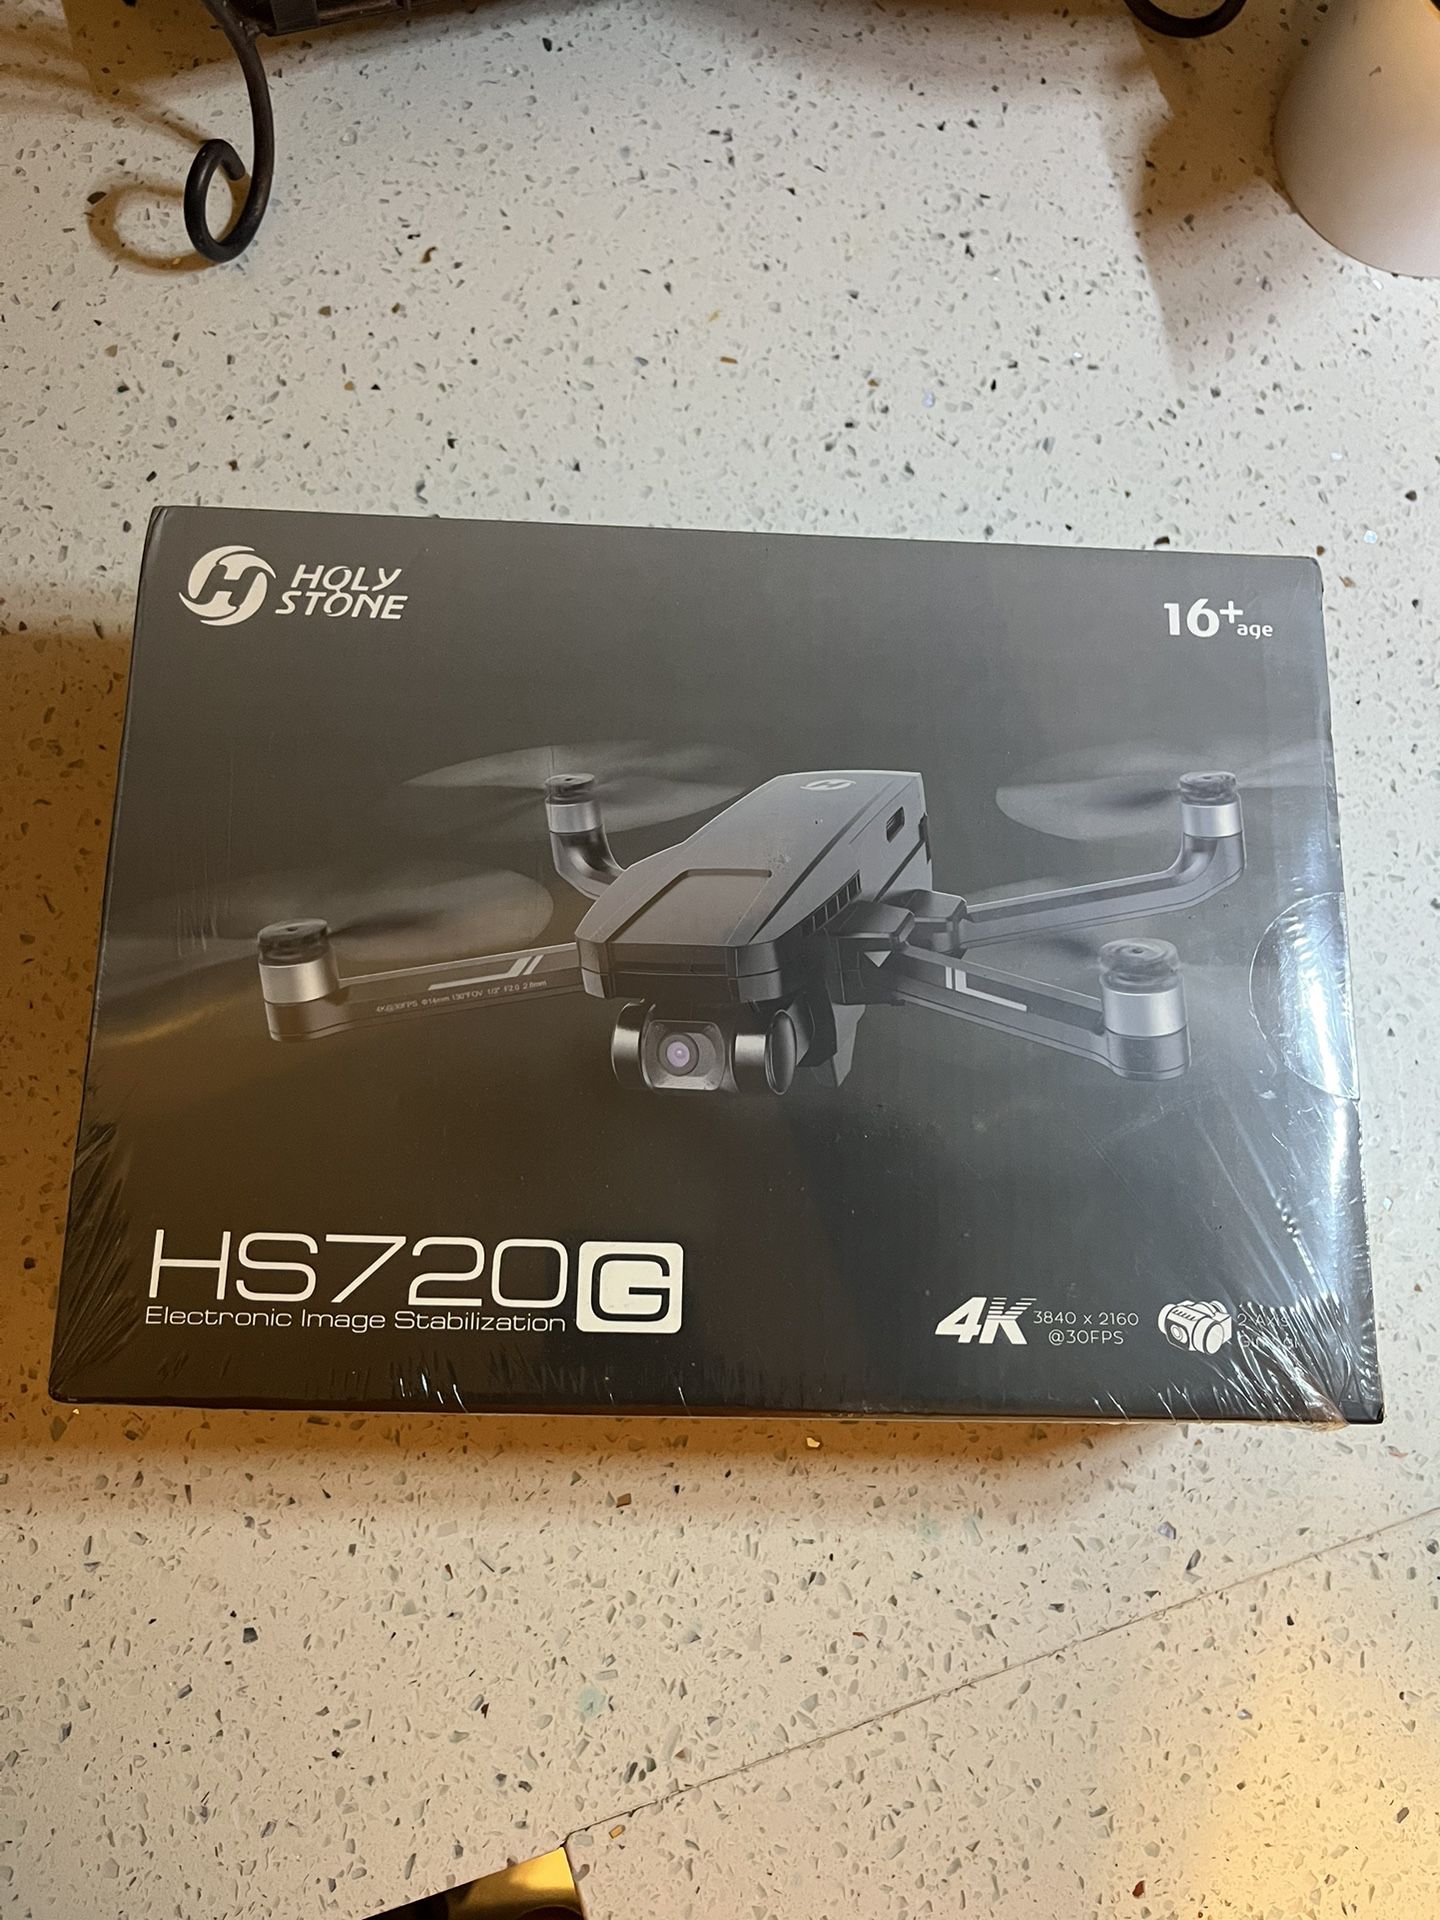 Drone 4k